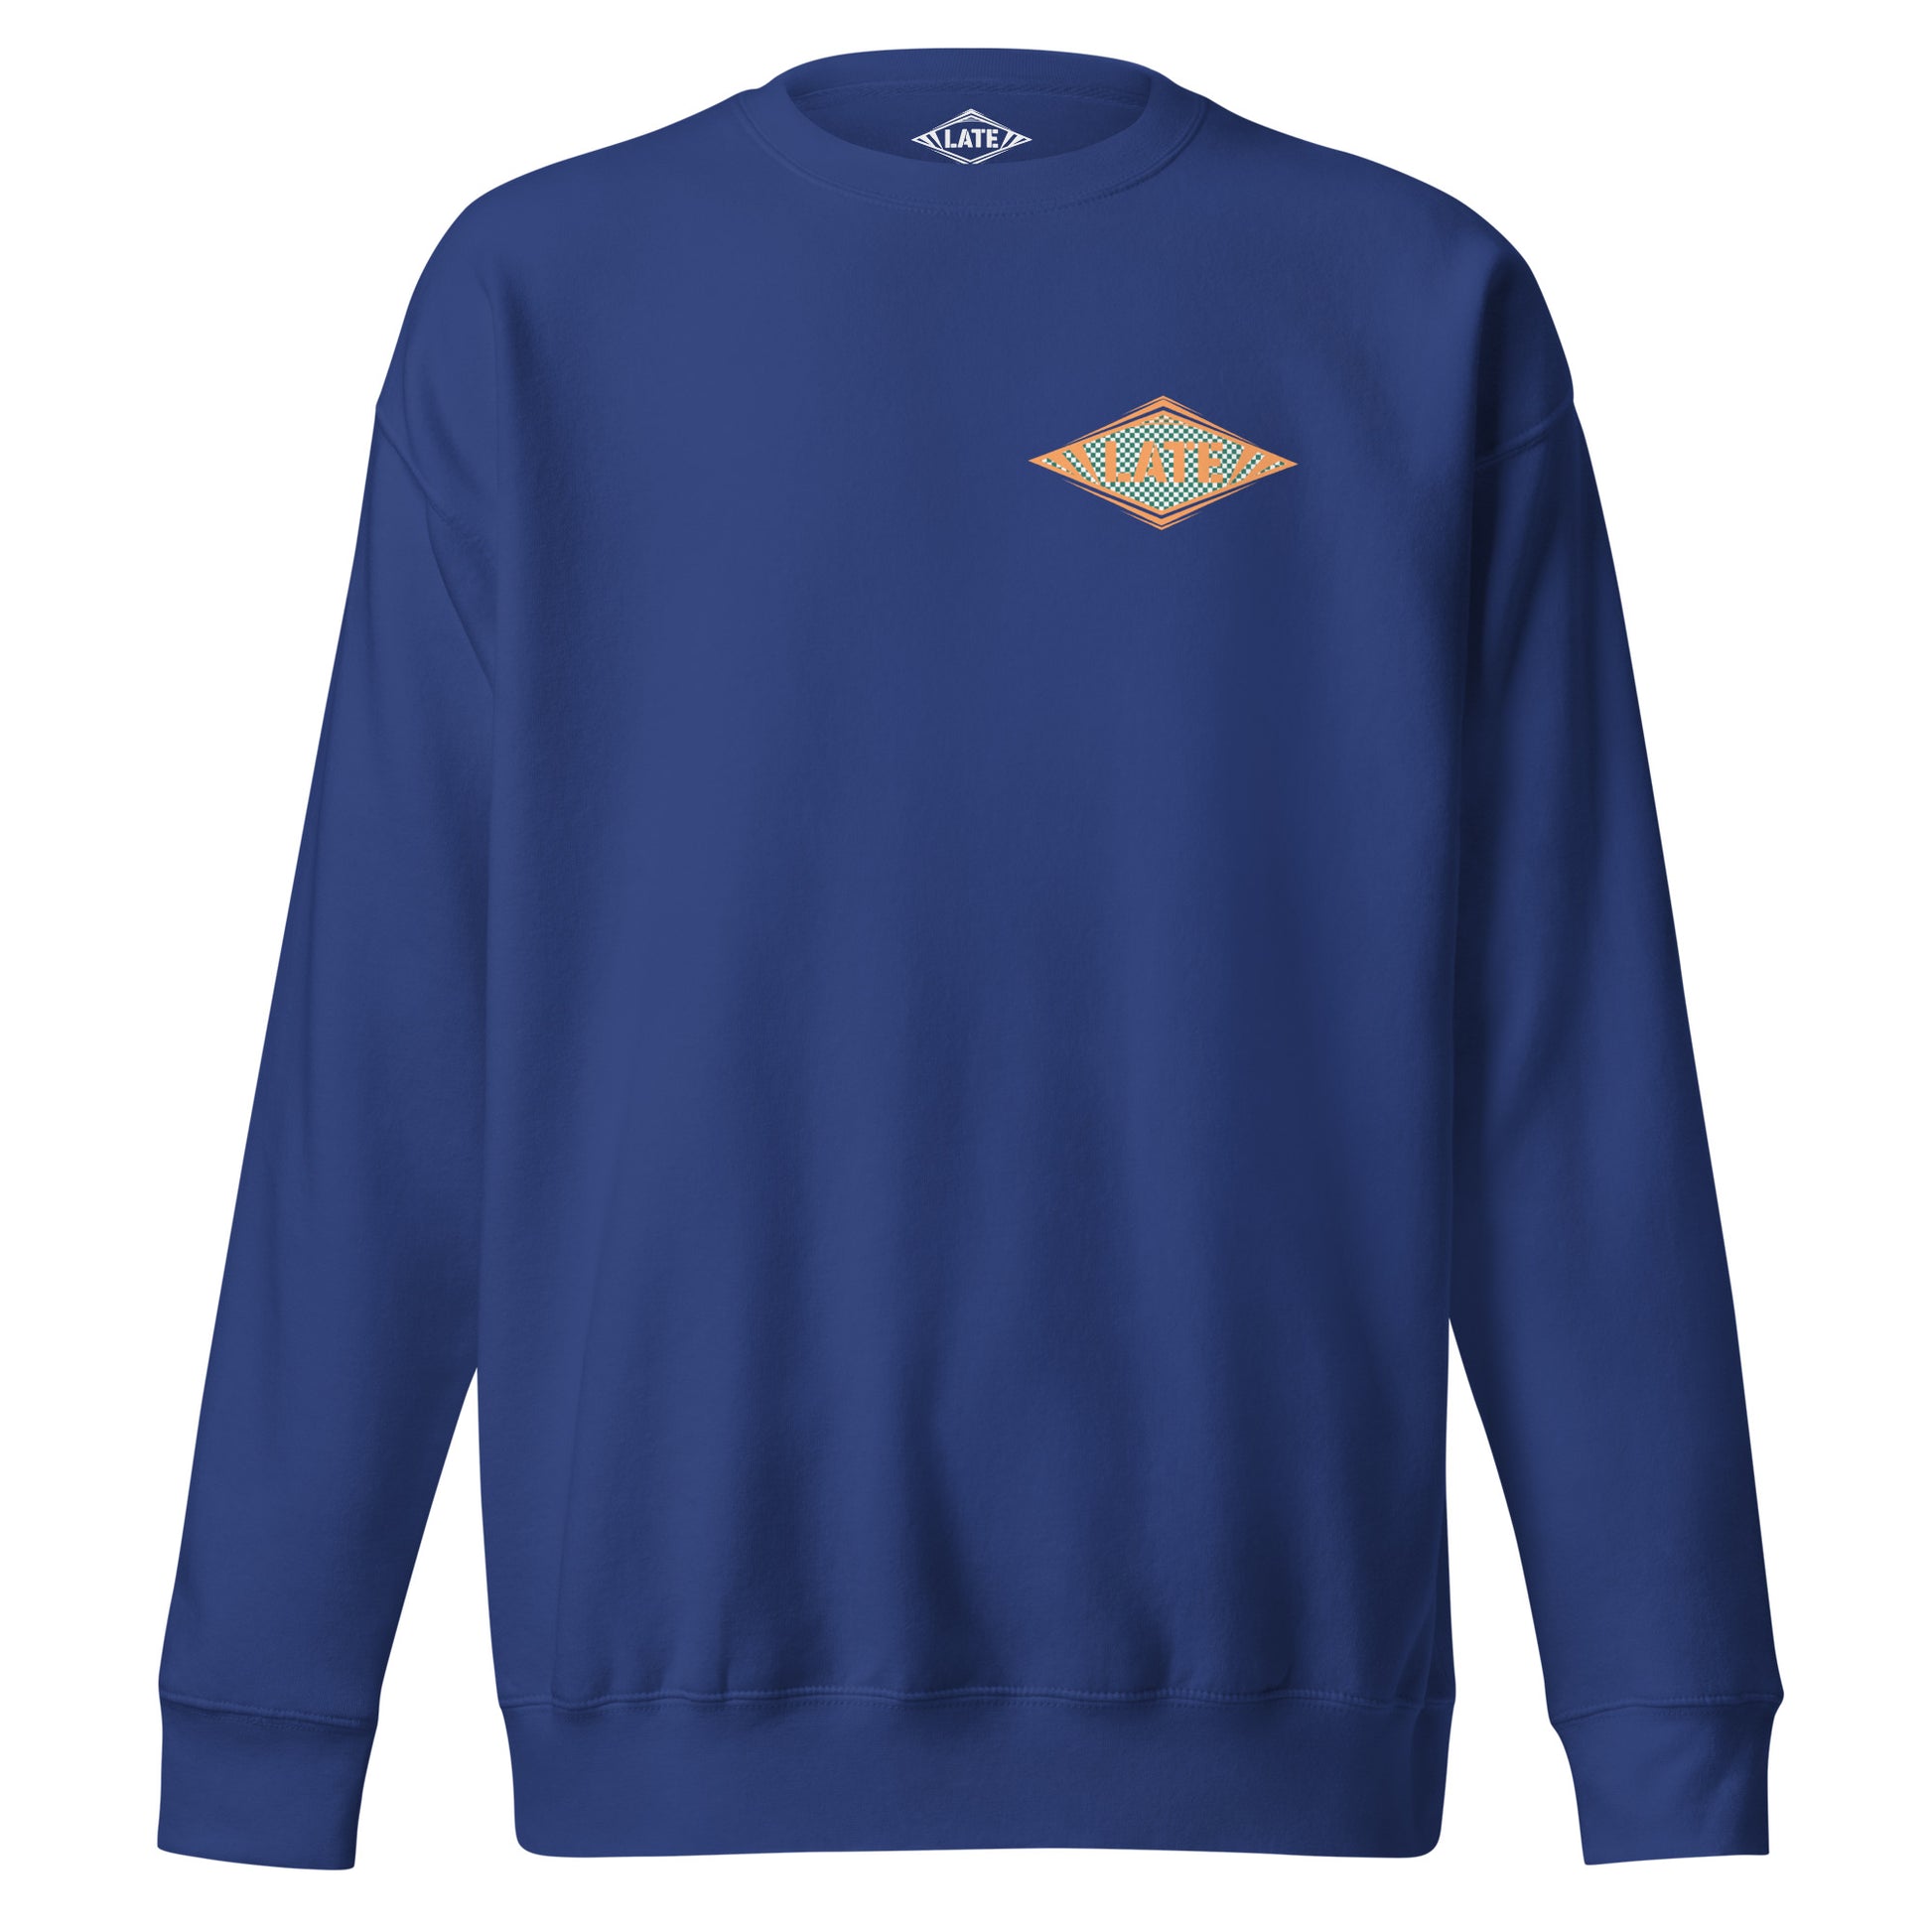 Sweatshirt Shred It logo Late à carreaux style Vans skateboarding sweat-shirt unisex couleur bleu